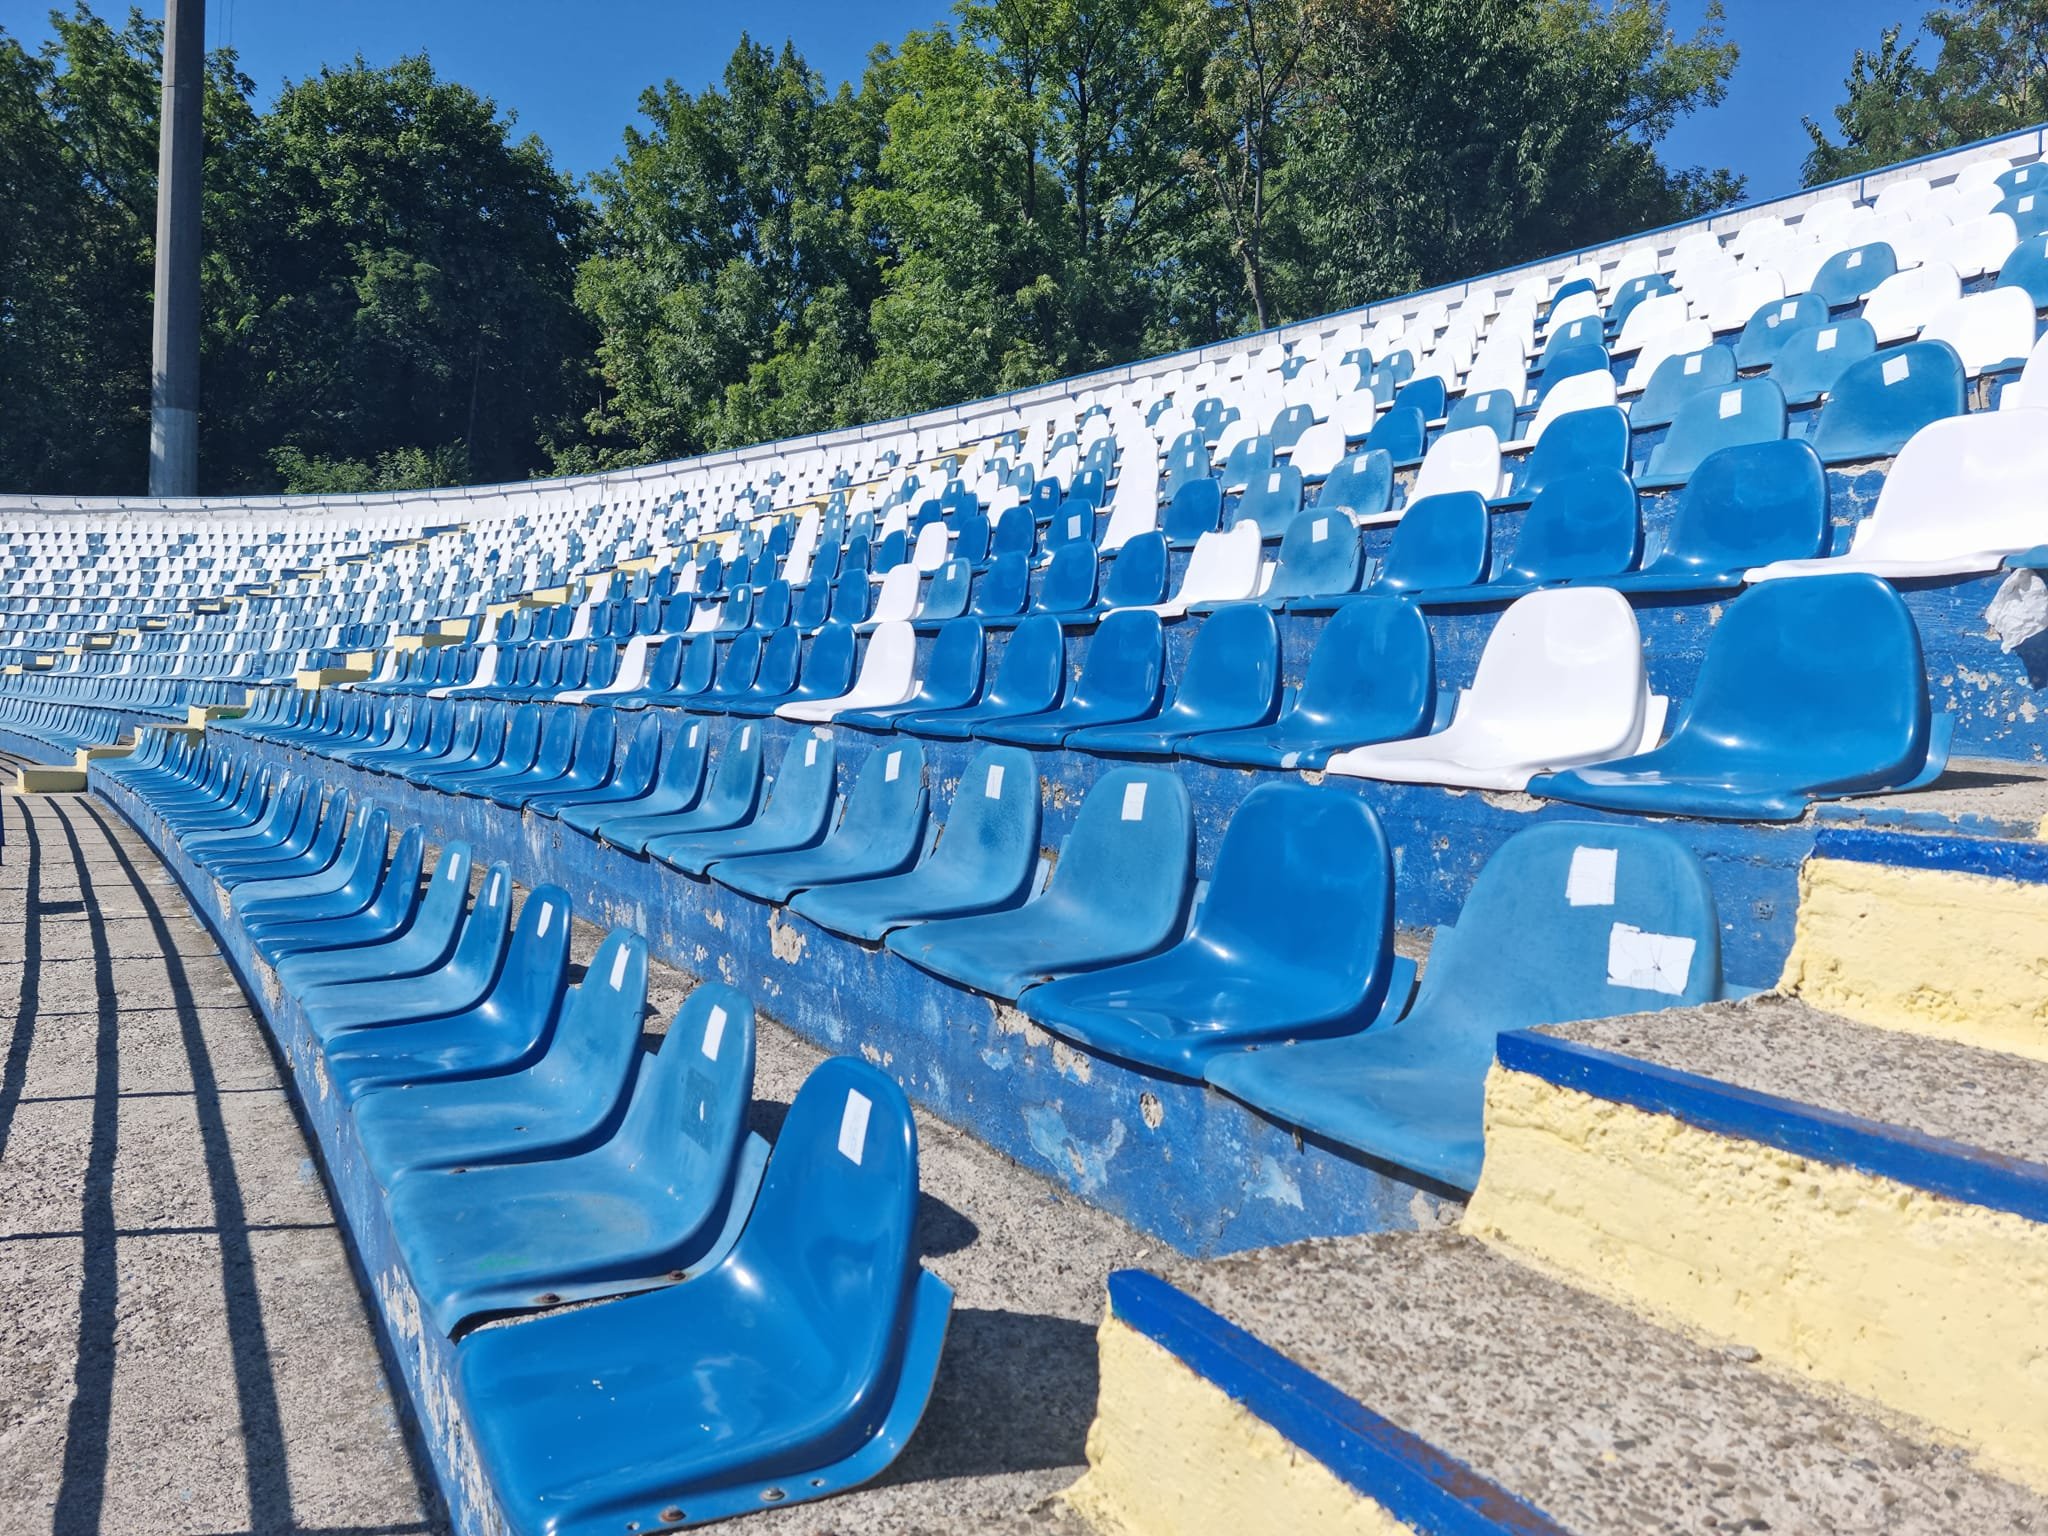  Până la noul stadion, Primăria aduce o tribună mobilă de o mie de locuri